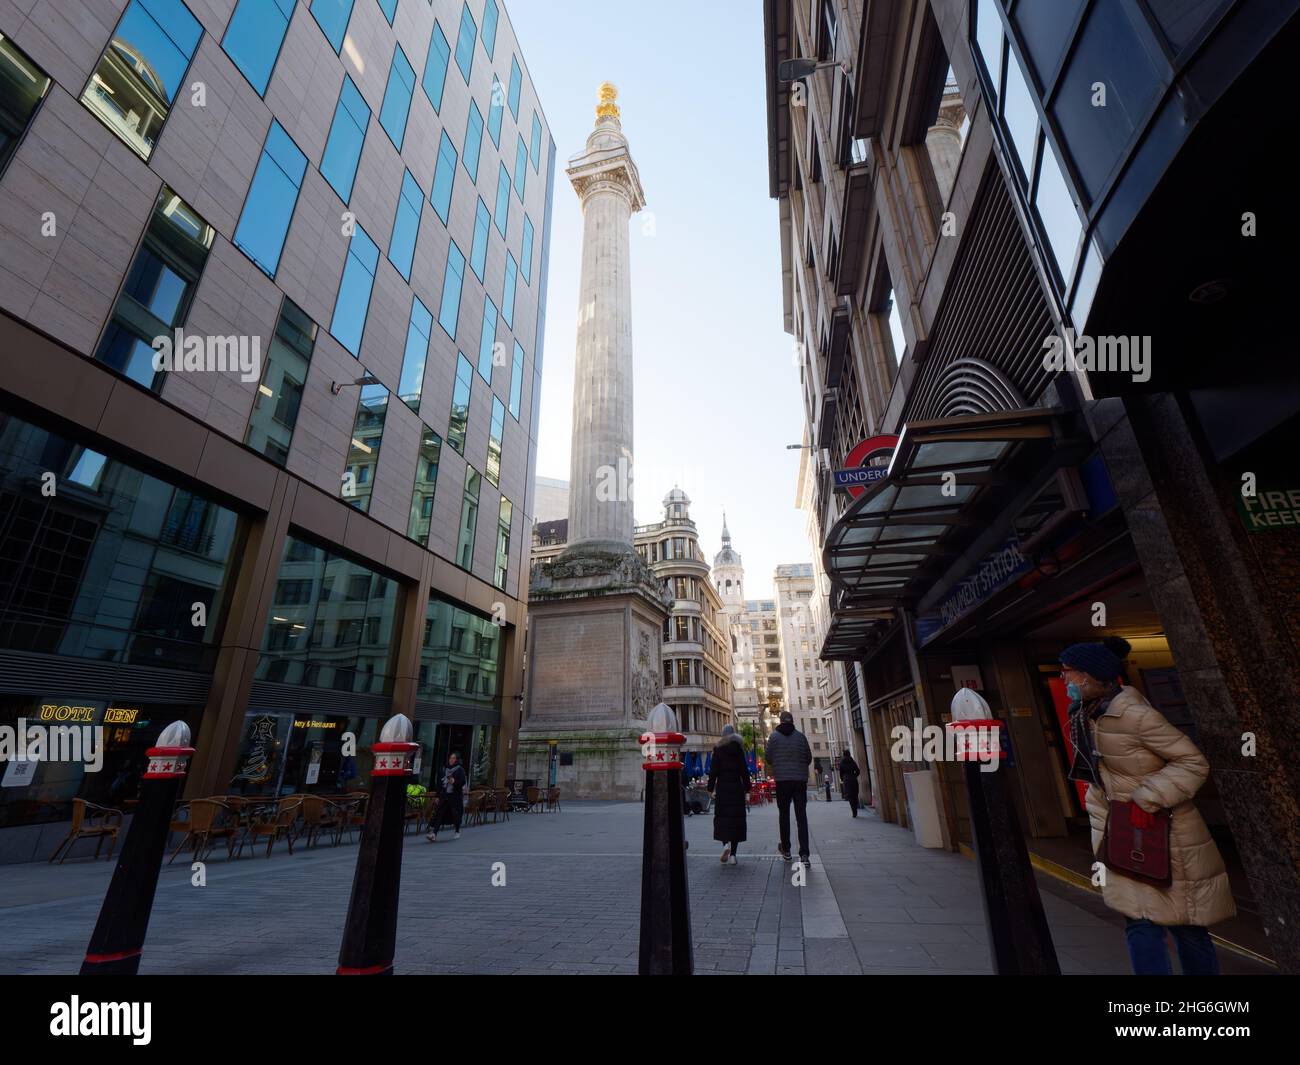 Londres, Grand Londres, Angleterre, janvier 5th 2022 : piétons à l'extérieur de la station de métro Monument pendant un matin hivernal avec le Monument derrière. Banque D'Images